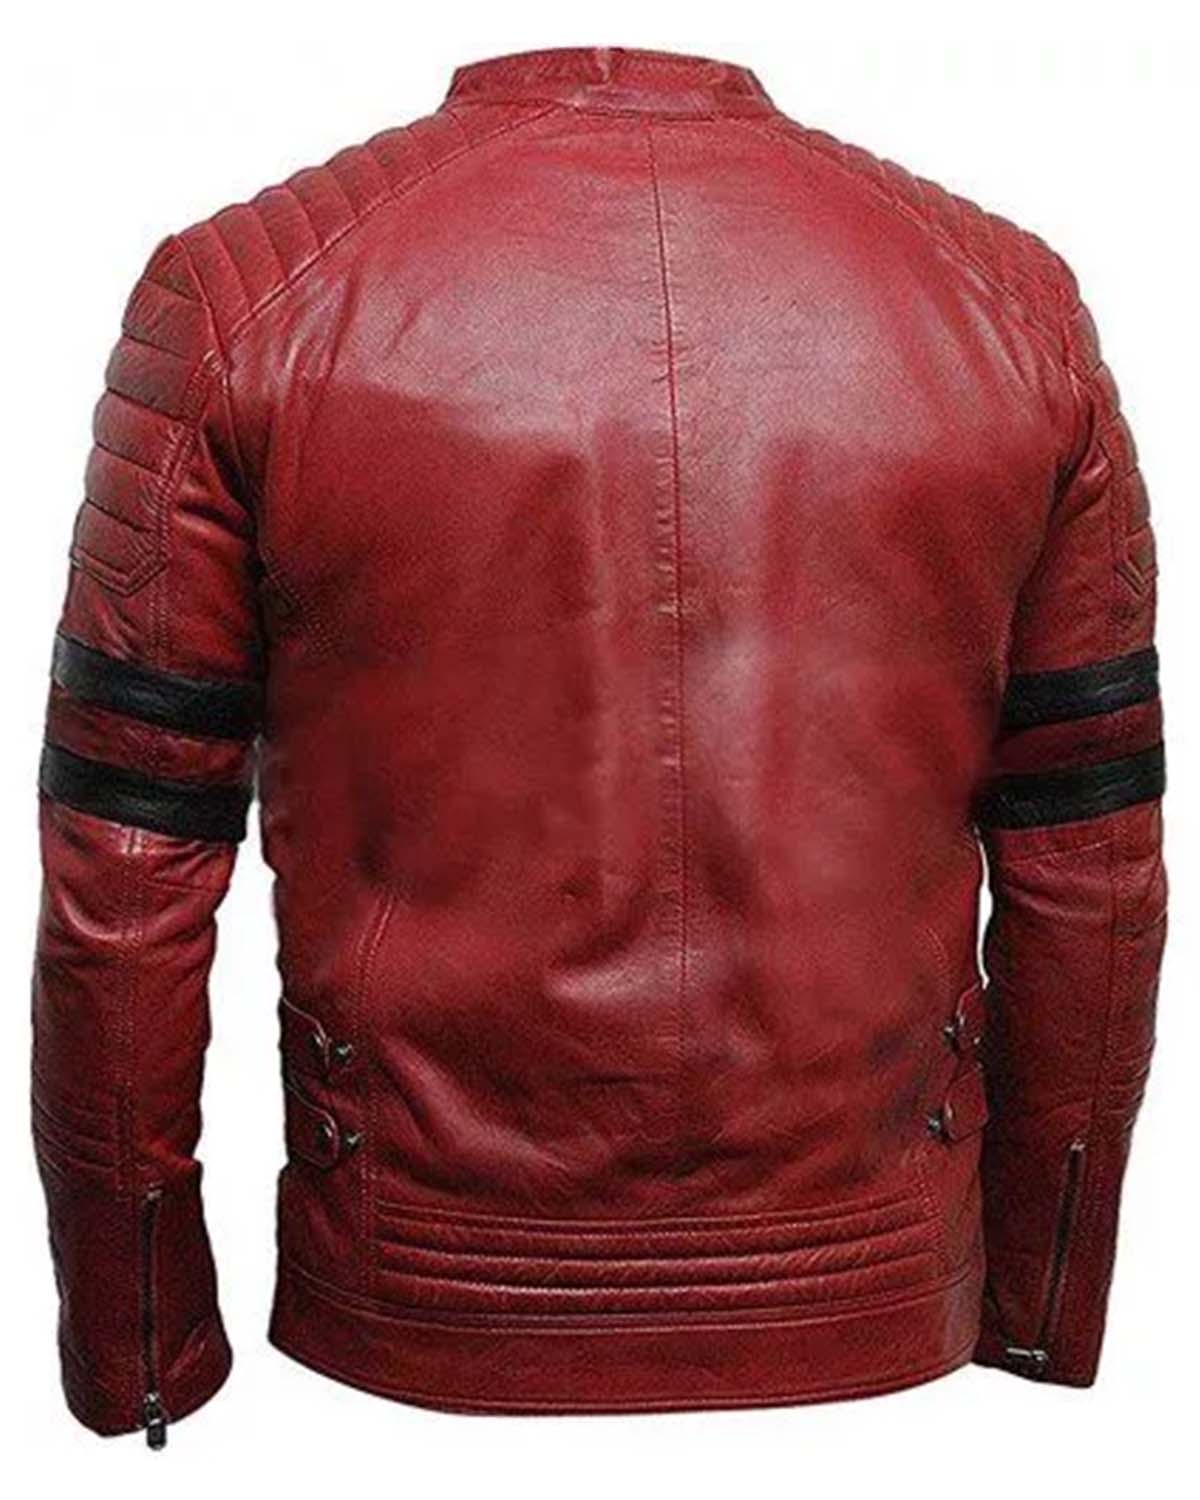 Elite Cafe Racer Retro Biker Red & Black Stripe Motorcycle Leather Jacket